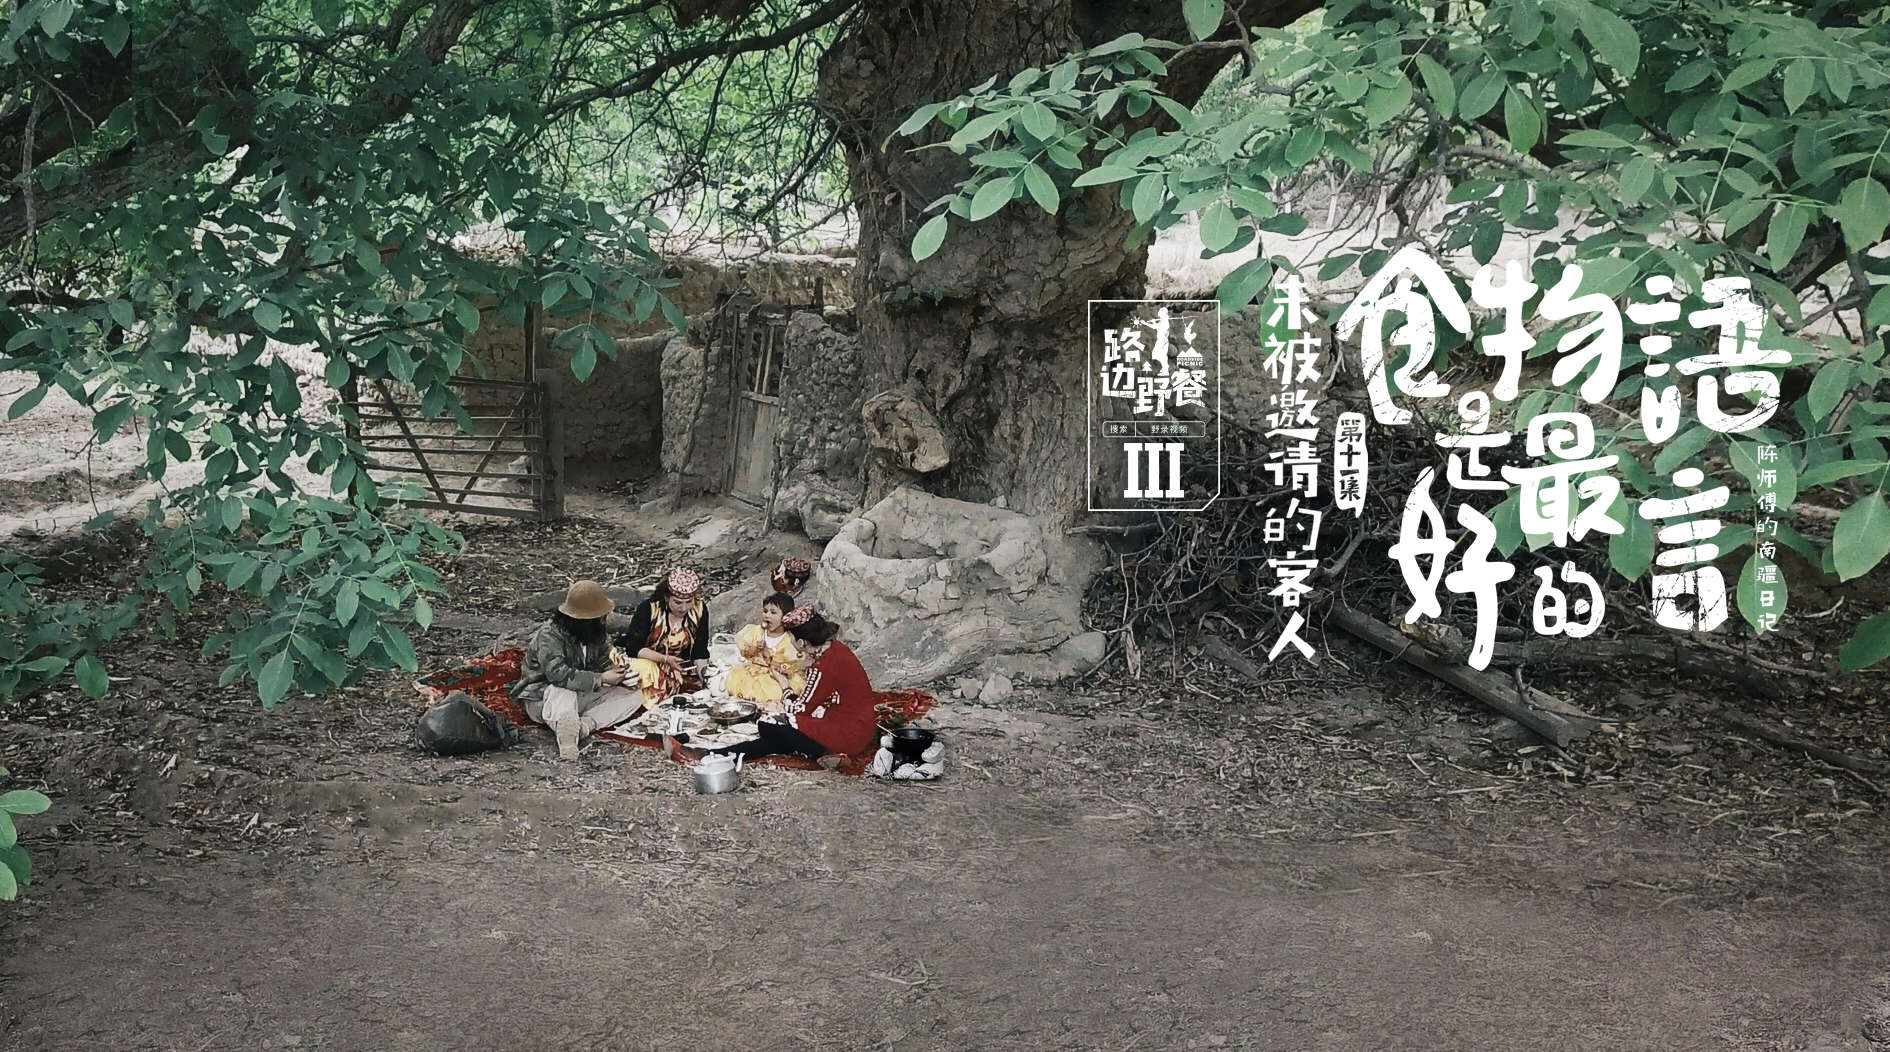 千年核桃树下的神秘美食盛宴，是陈师傅与三位新疆美女的路边野餐